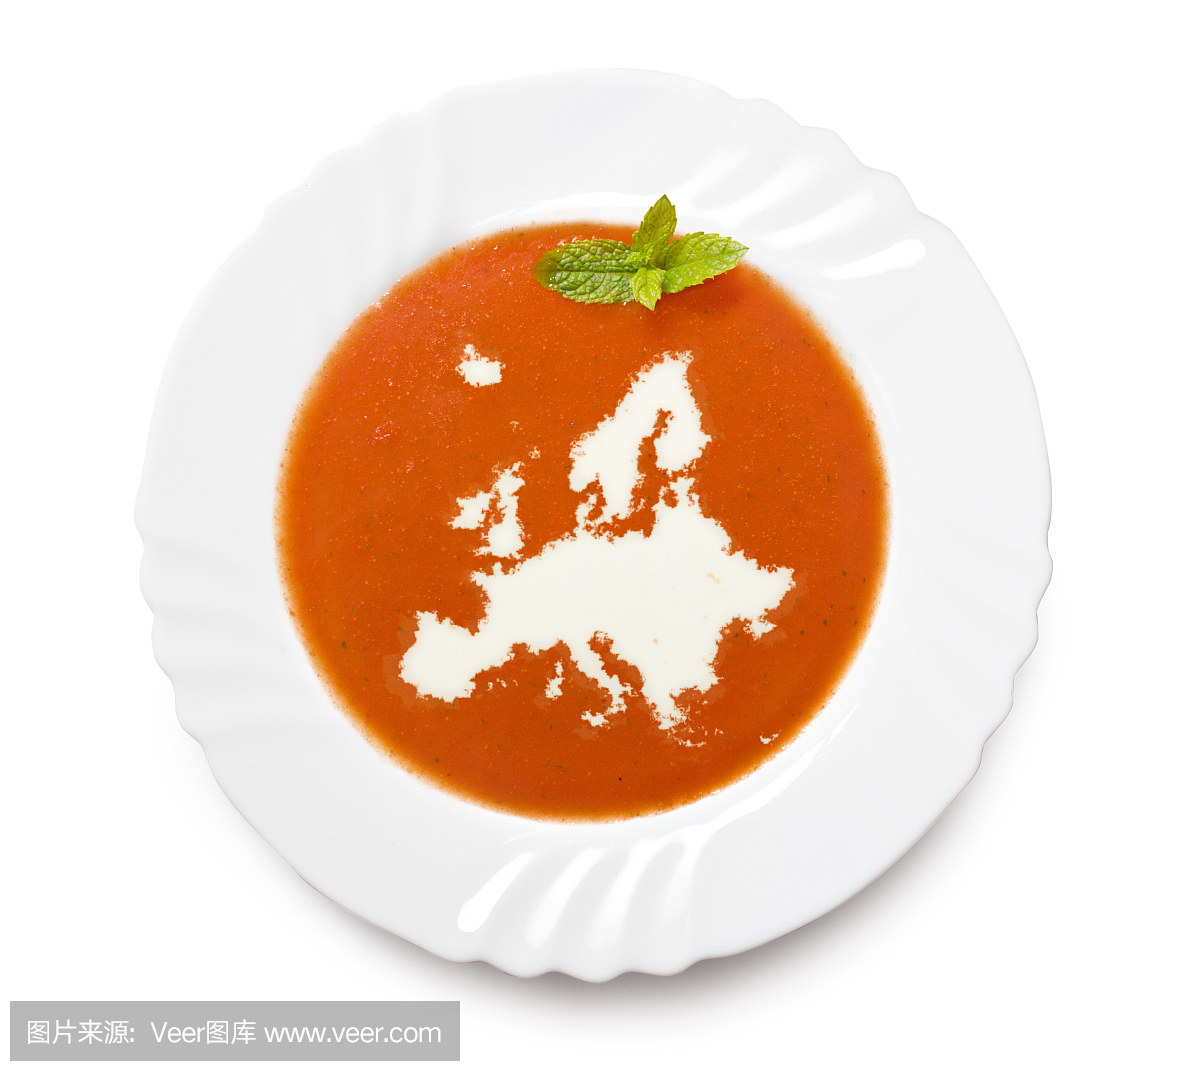 平板番茄汤与欧洲形状的奶油(系列)